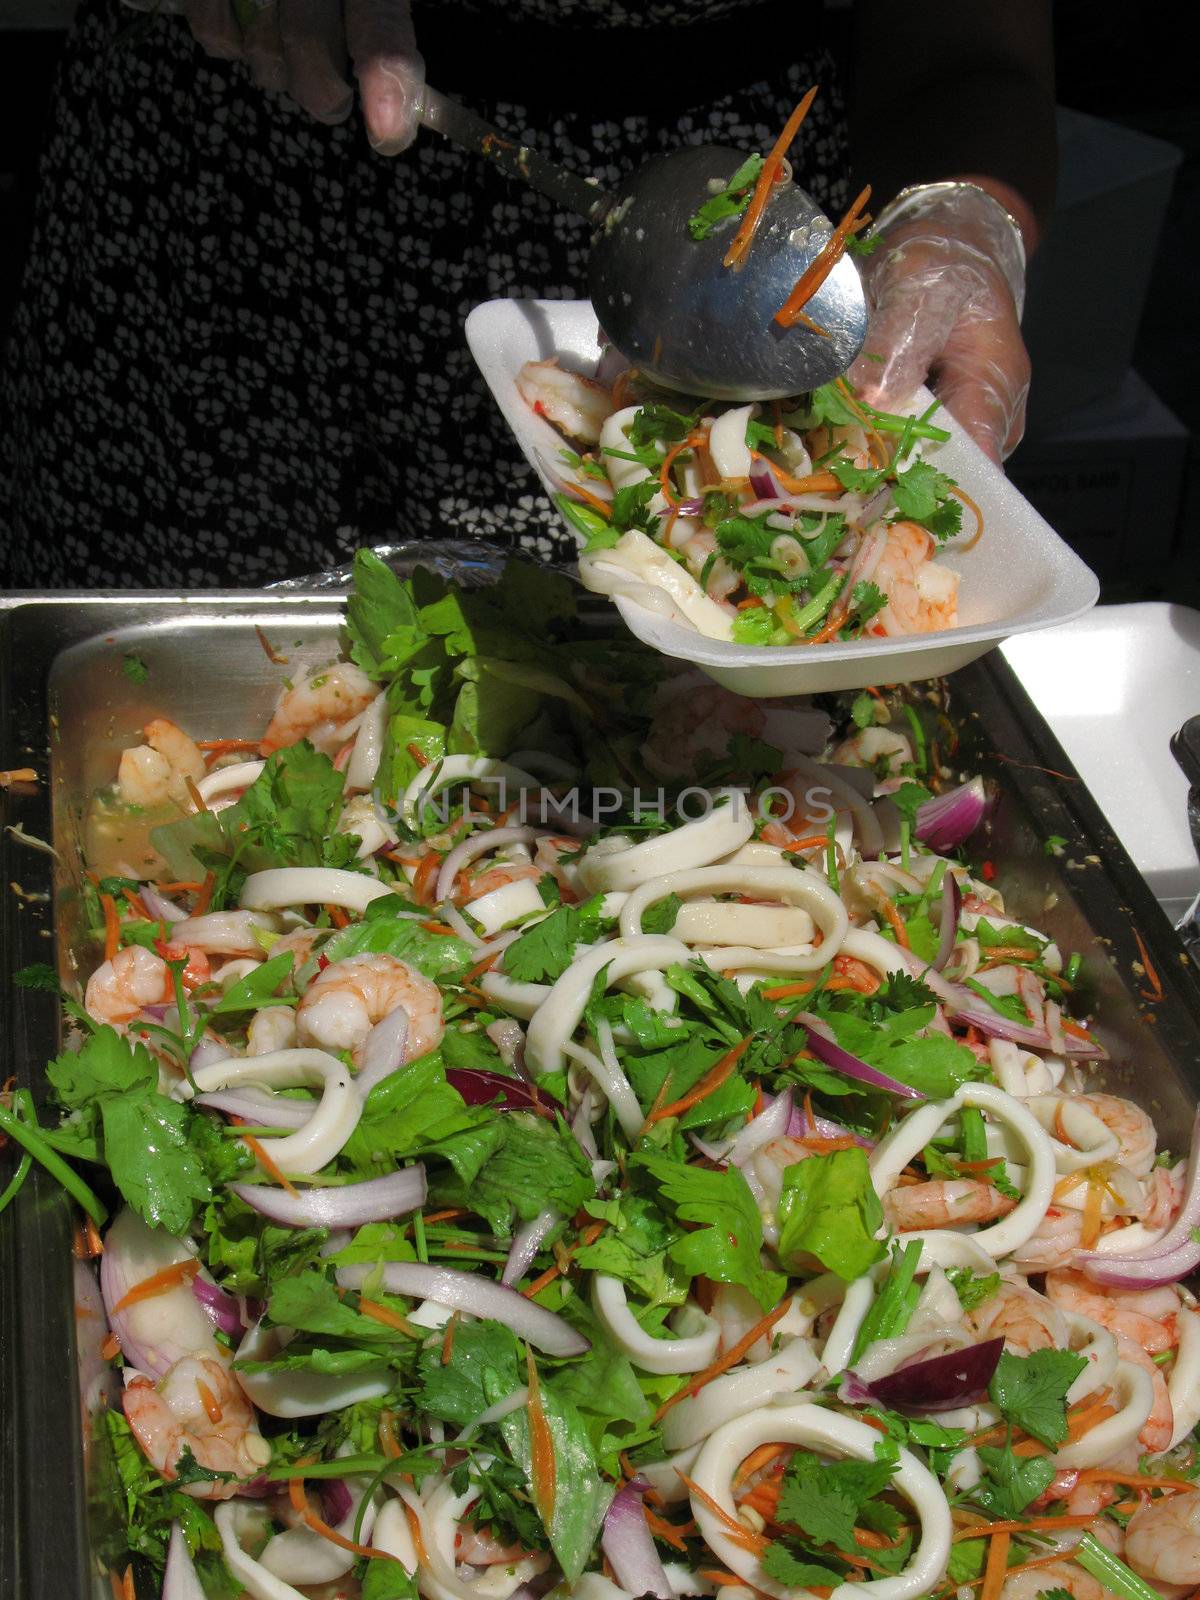 Caterer serves up seafood salad